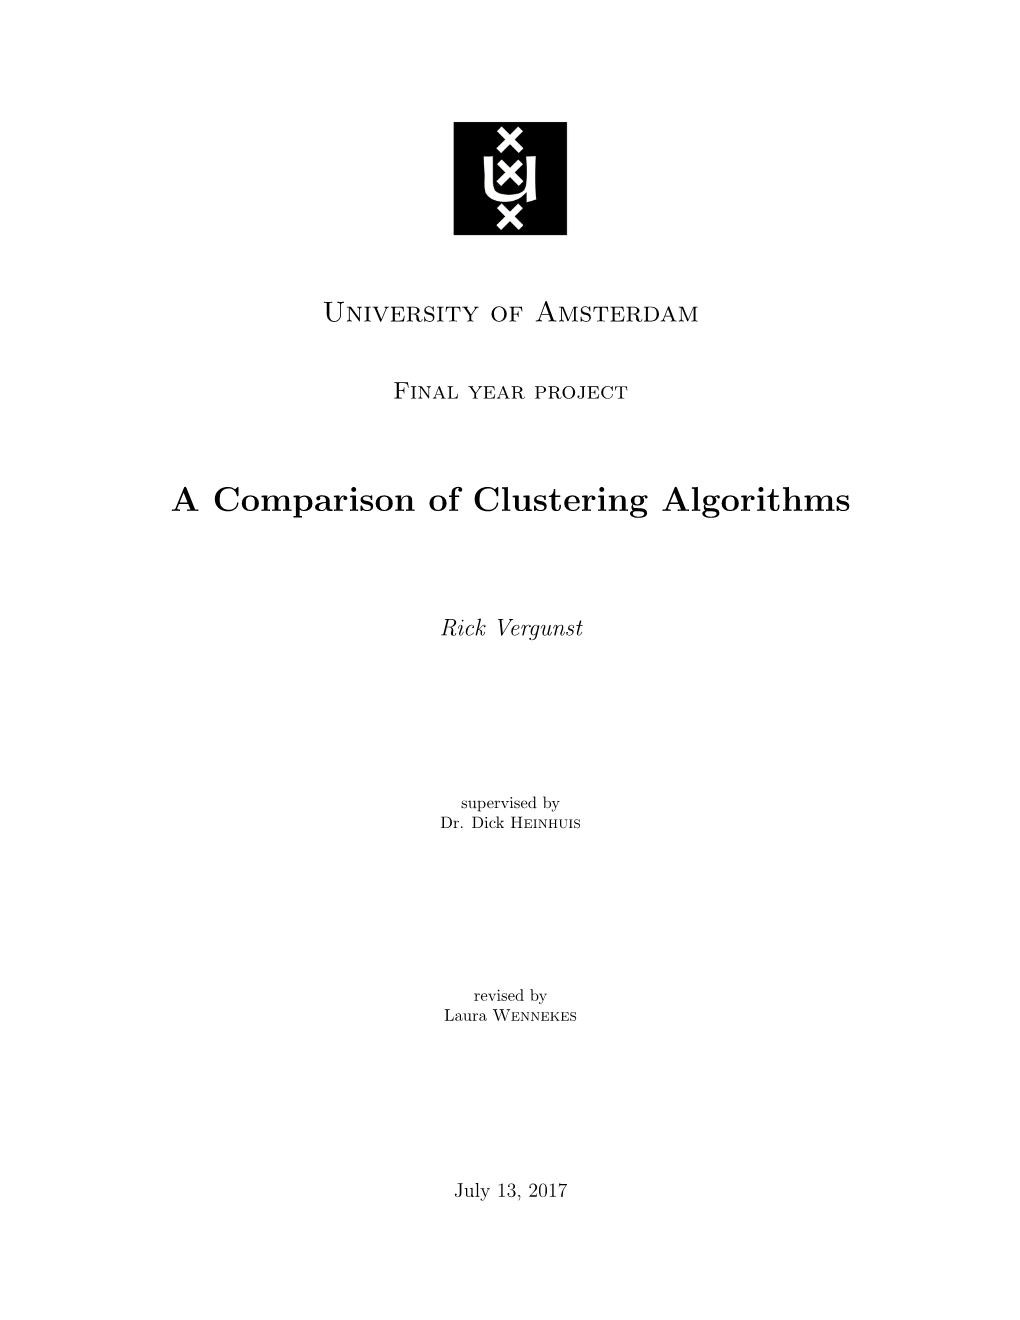 A Comparison of Clustering Algorithms